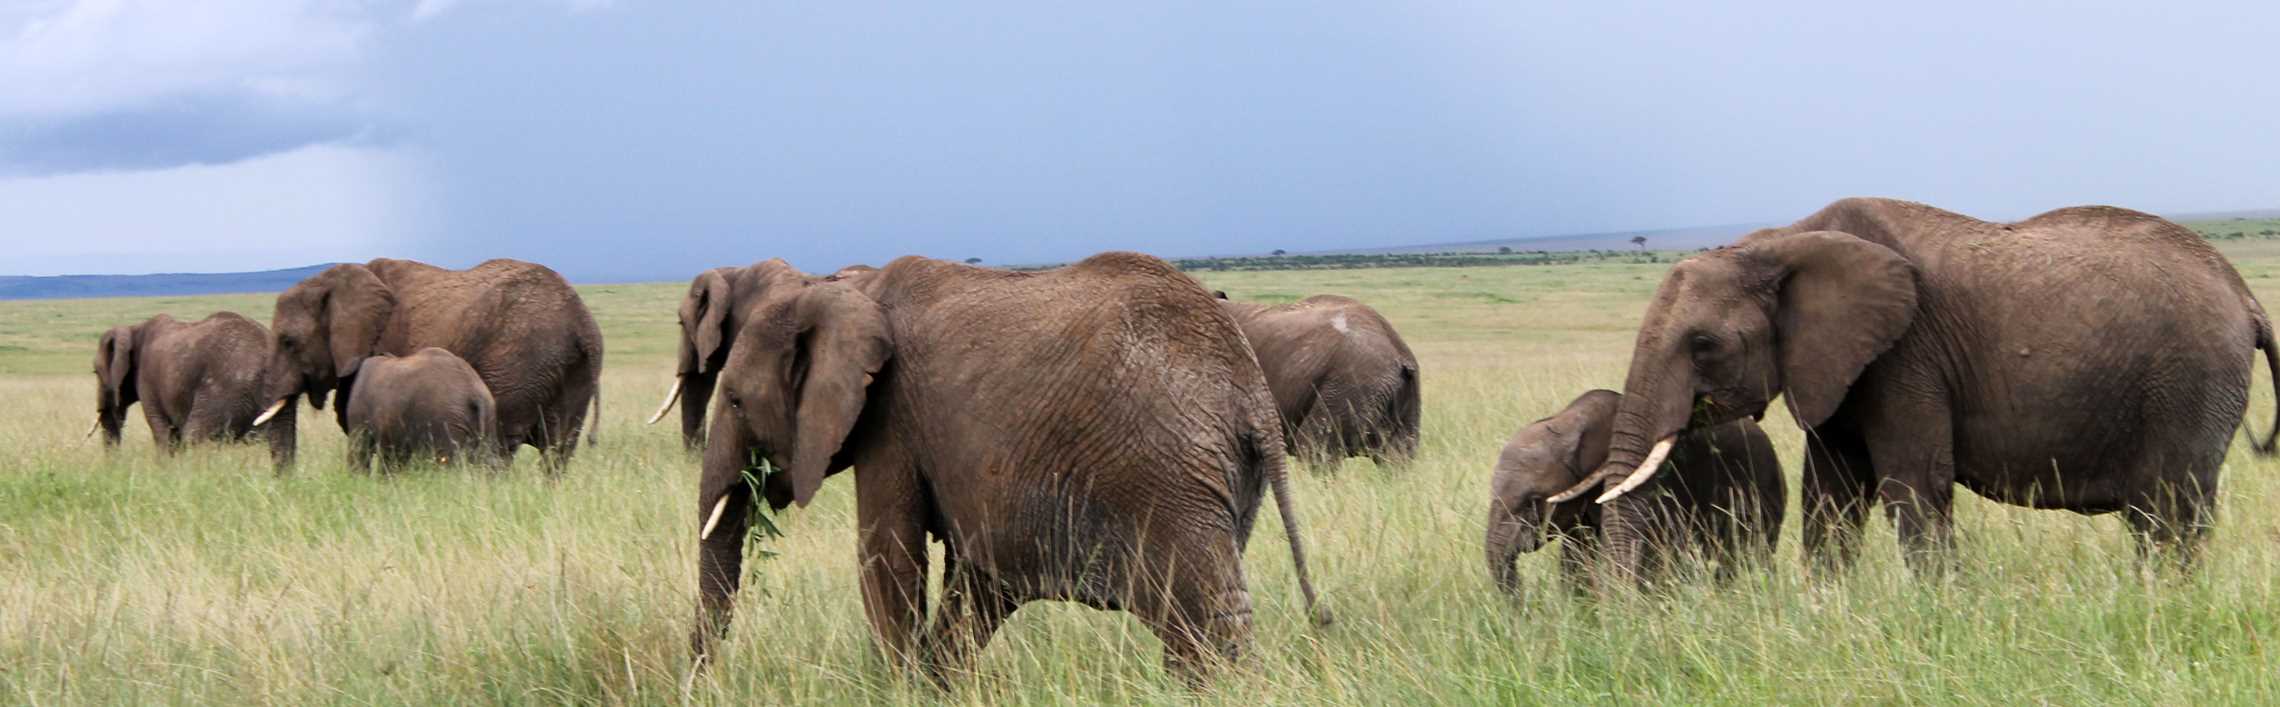 Elephants grazing in a field